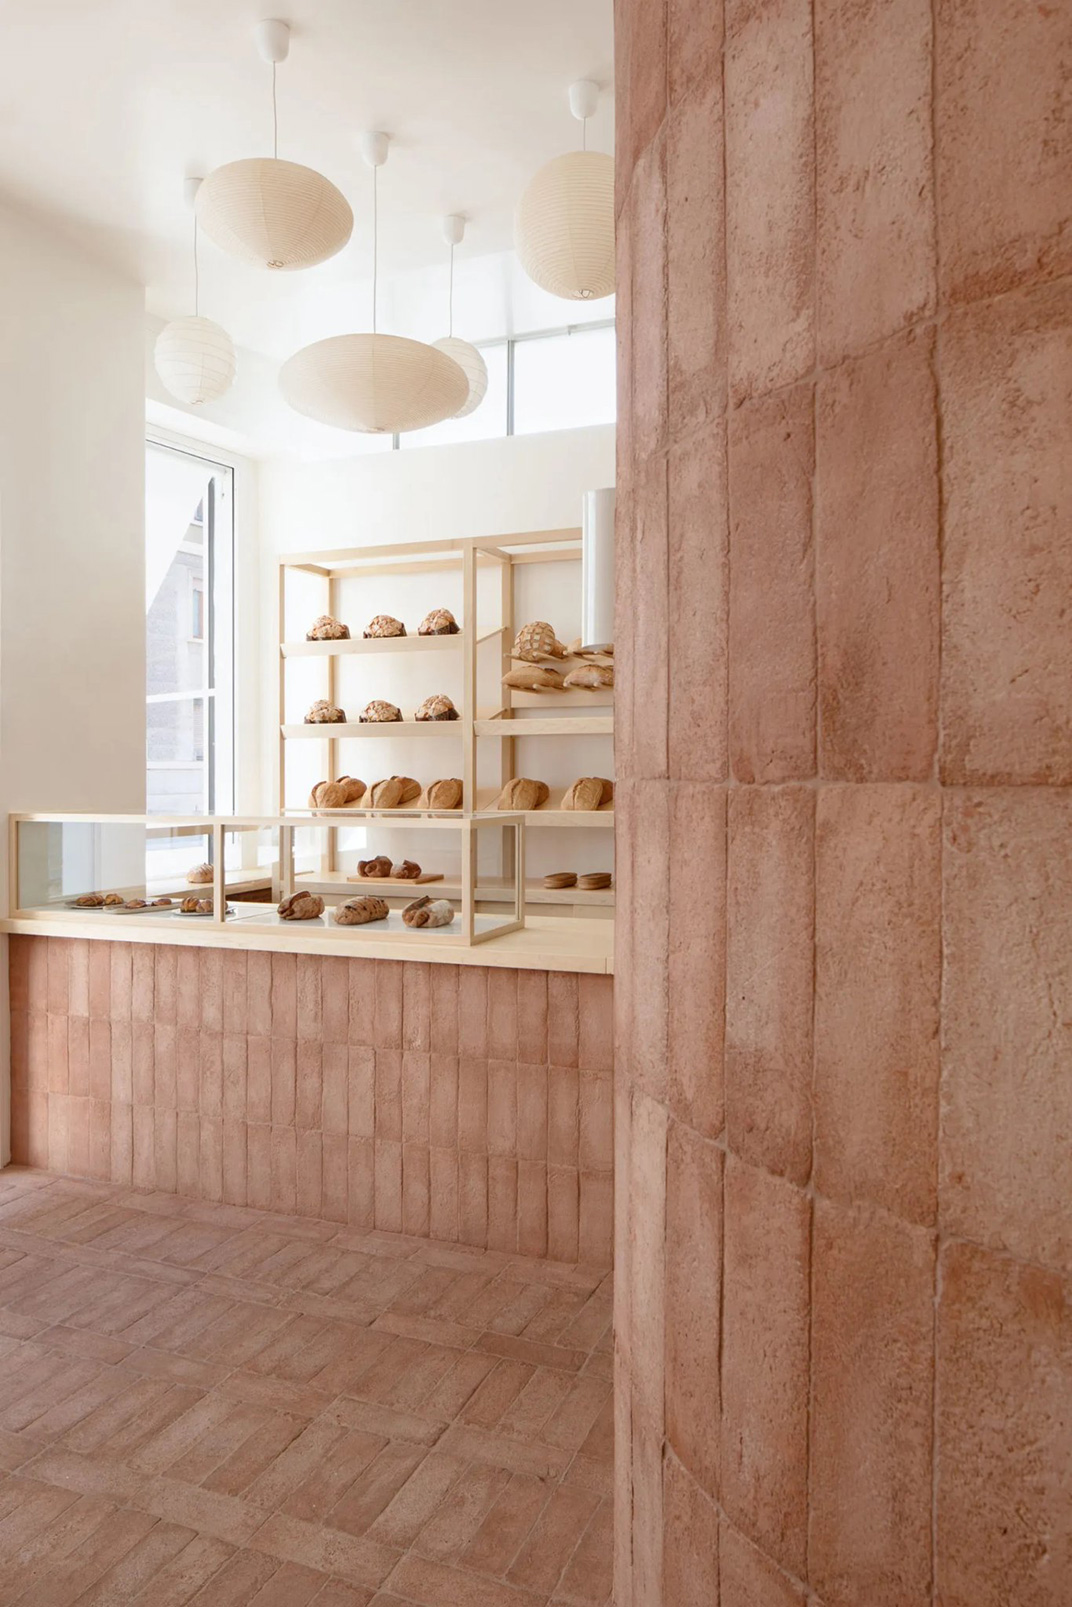 大发酵的面包店Signor Lievito 意大利 北京 面包店 红砖 木色 logo设计 vi设计 空间设计